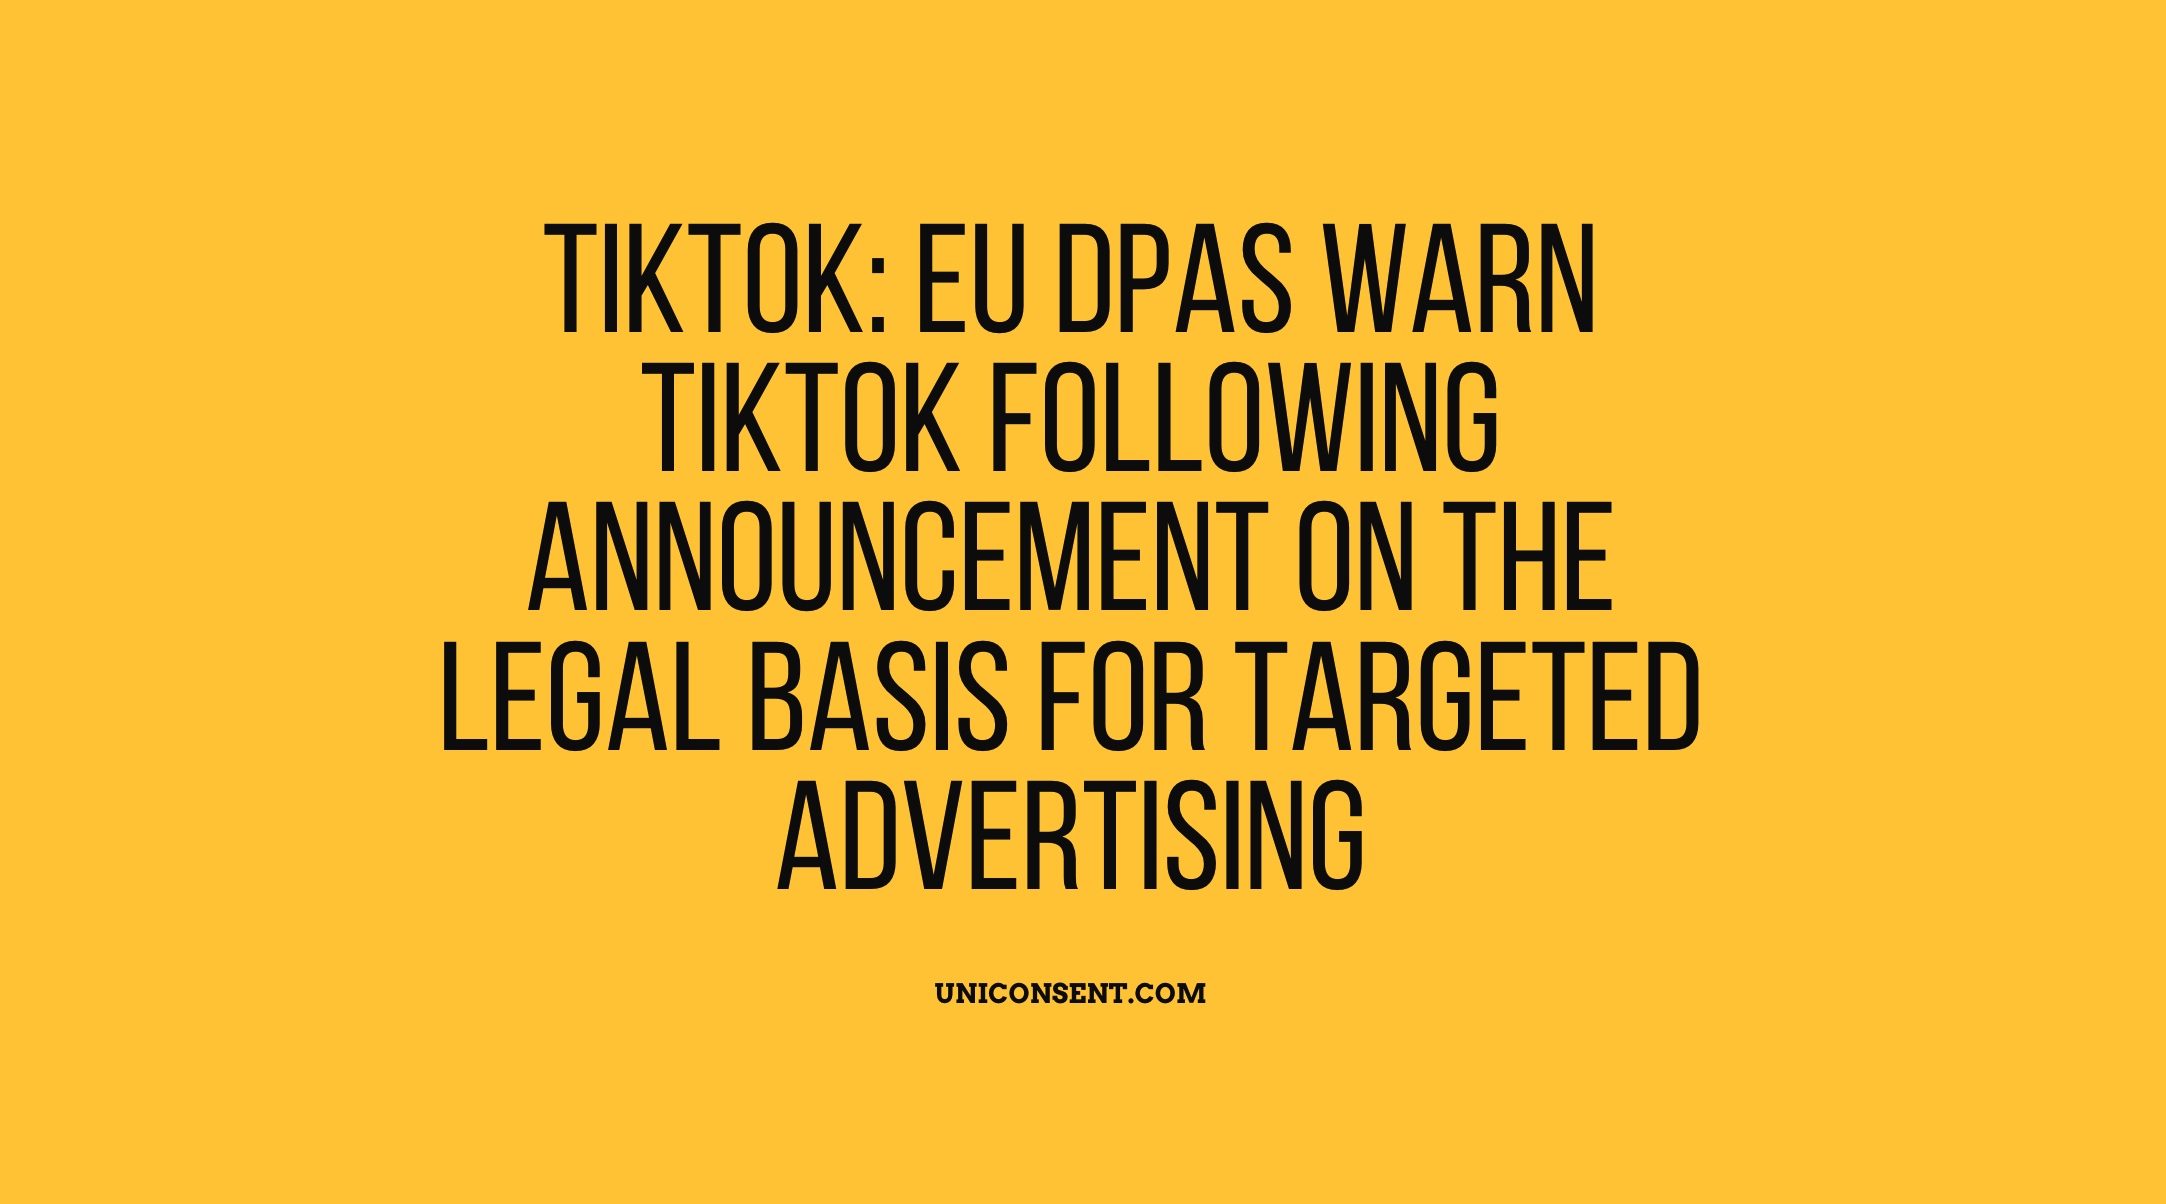 TikTok fait face à une nouvelle série de plaintes réglementaires en Europe concernant la sécurité des enfants et les préoccupations relatives à la vie privée